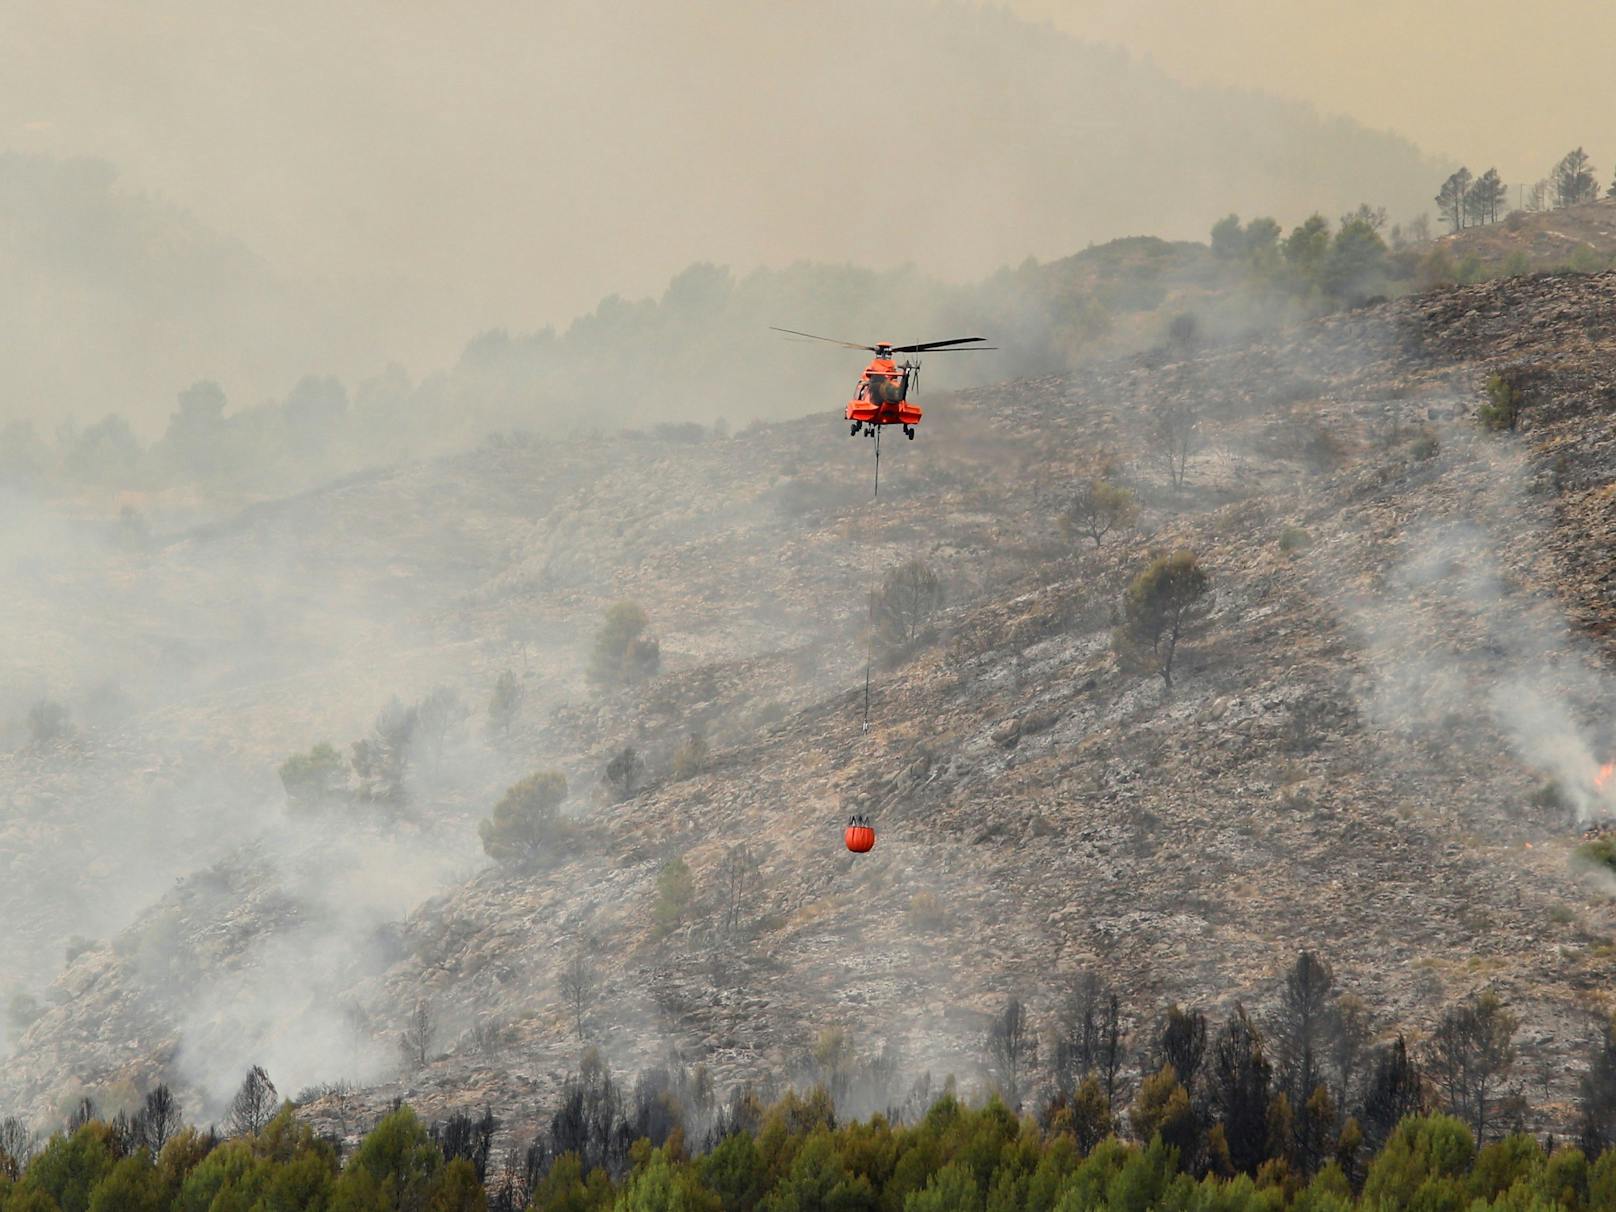 Ein Feuerwehrhubschrauber bekämpft einen Waldbrand in Viver, Ostspanien. Laut dem "European Forest Fire Information System" (Effis) sind in diesem Jahr in Spanien bisher 275.000 Hektar bei Waldbränden verbrannt. Das ist mehr als das Vierfache des Jahresdurchschnitts des Landes von 67.000 Hektar seit Beginn der Aufzeichnungen 2006.